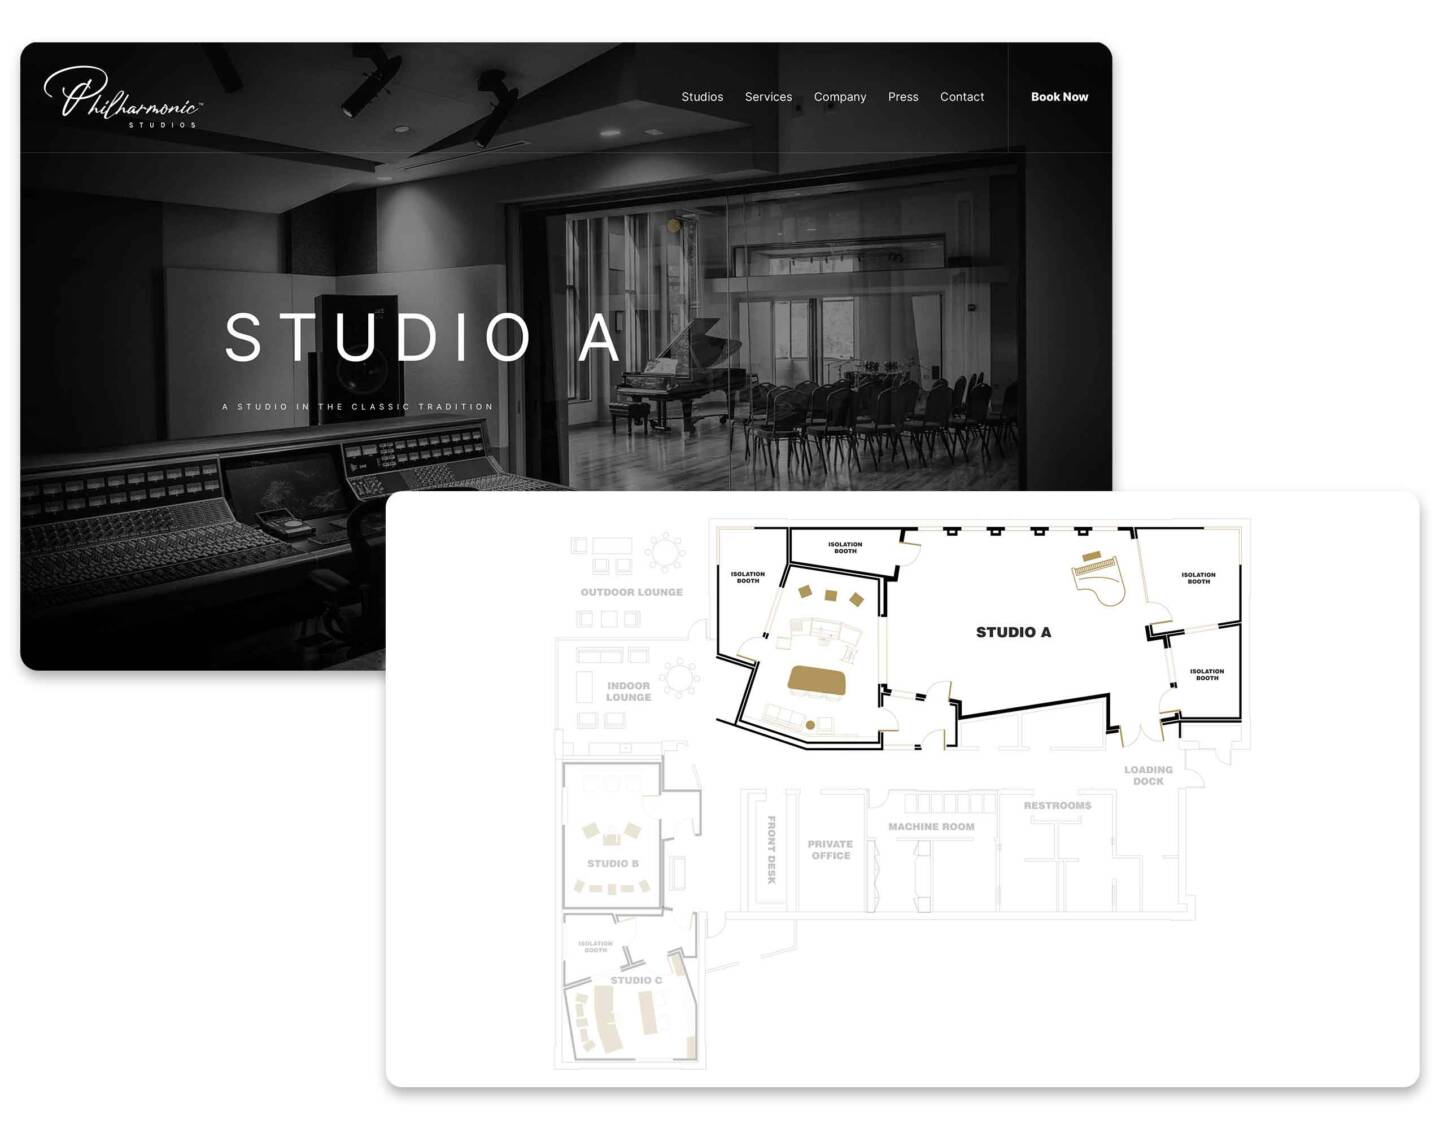 Studio blueprints and a UI screen design.